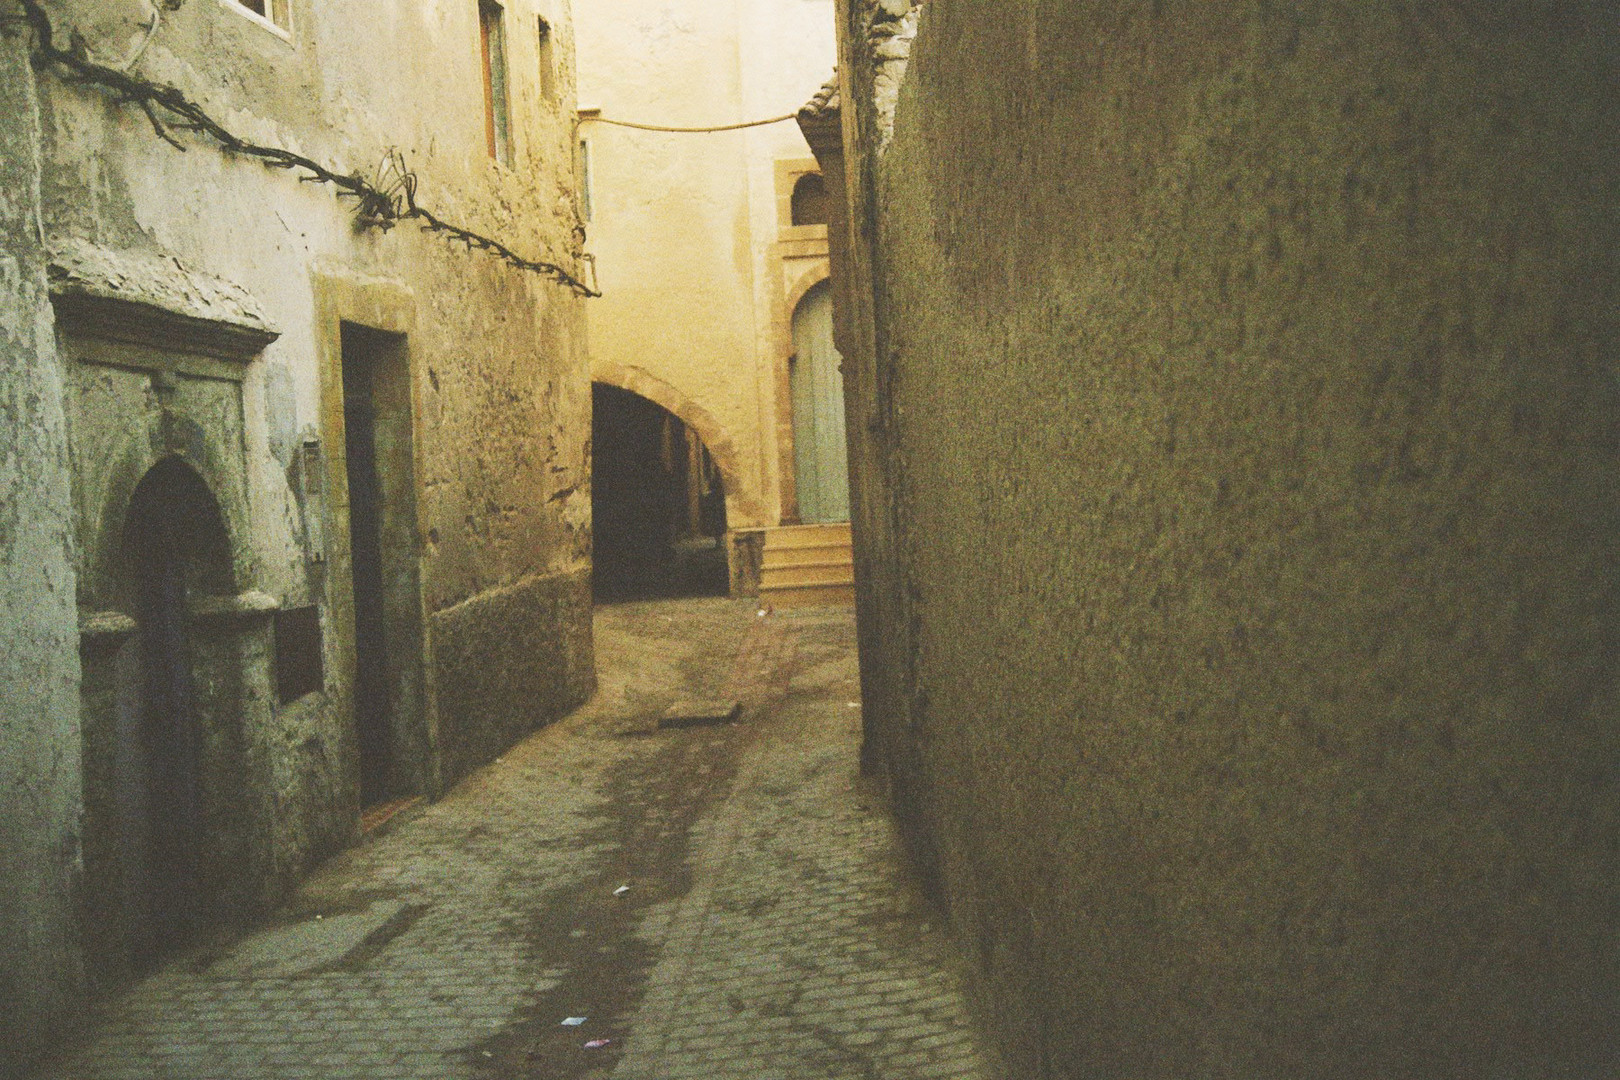 Street in Essaouira